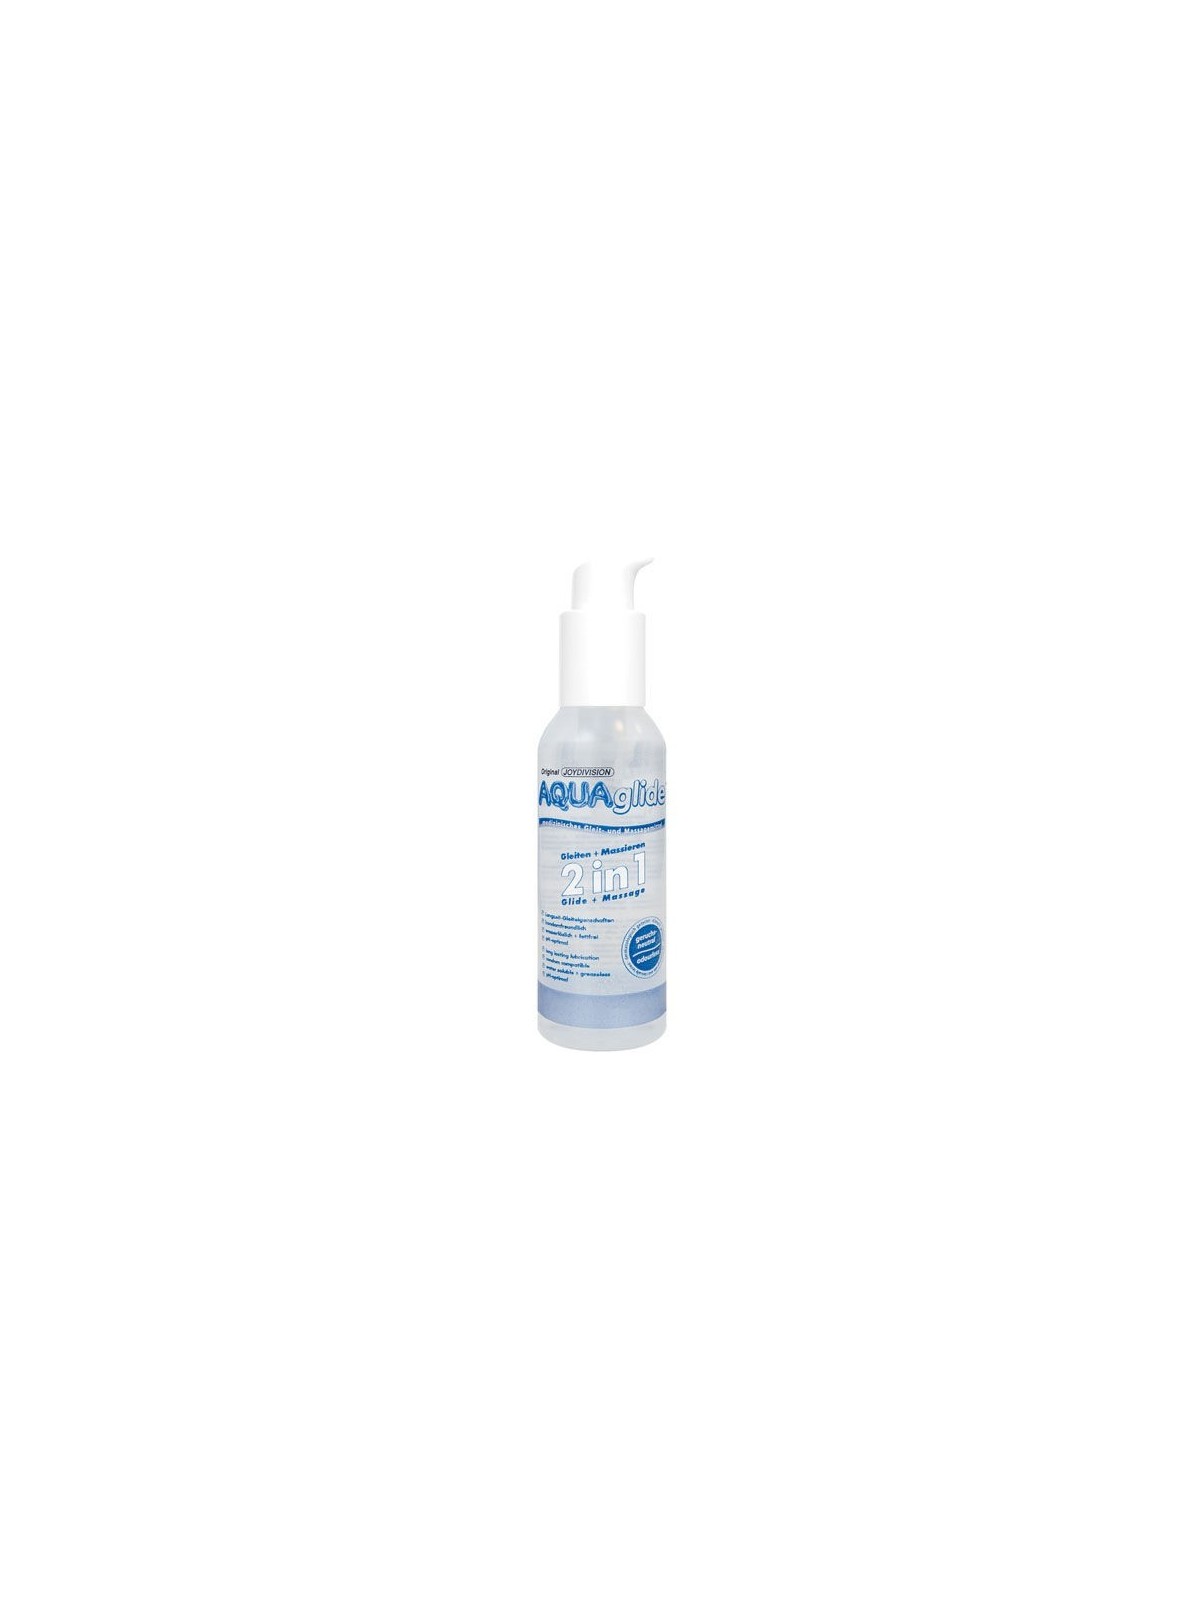 Aquaglide 2 En 1 Lubricante & Masaje - Comprar Crema masaje sexual Aquaglide - Lubricantes base agua (1)